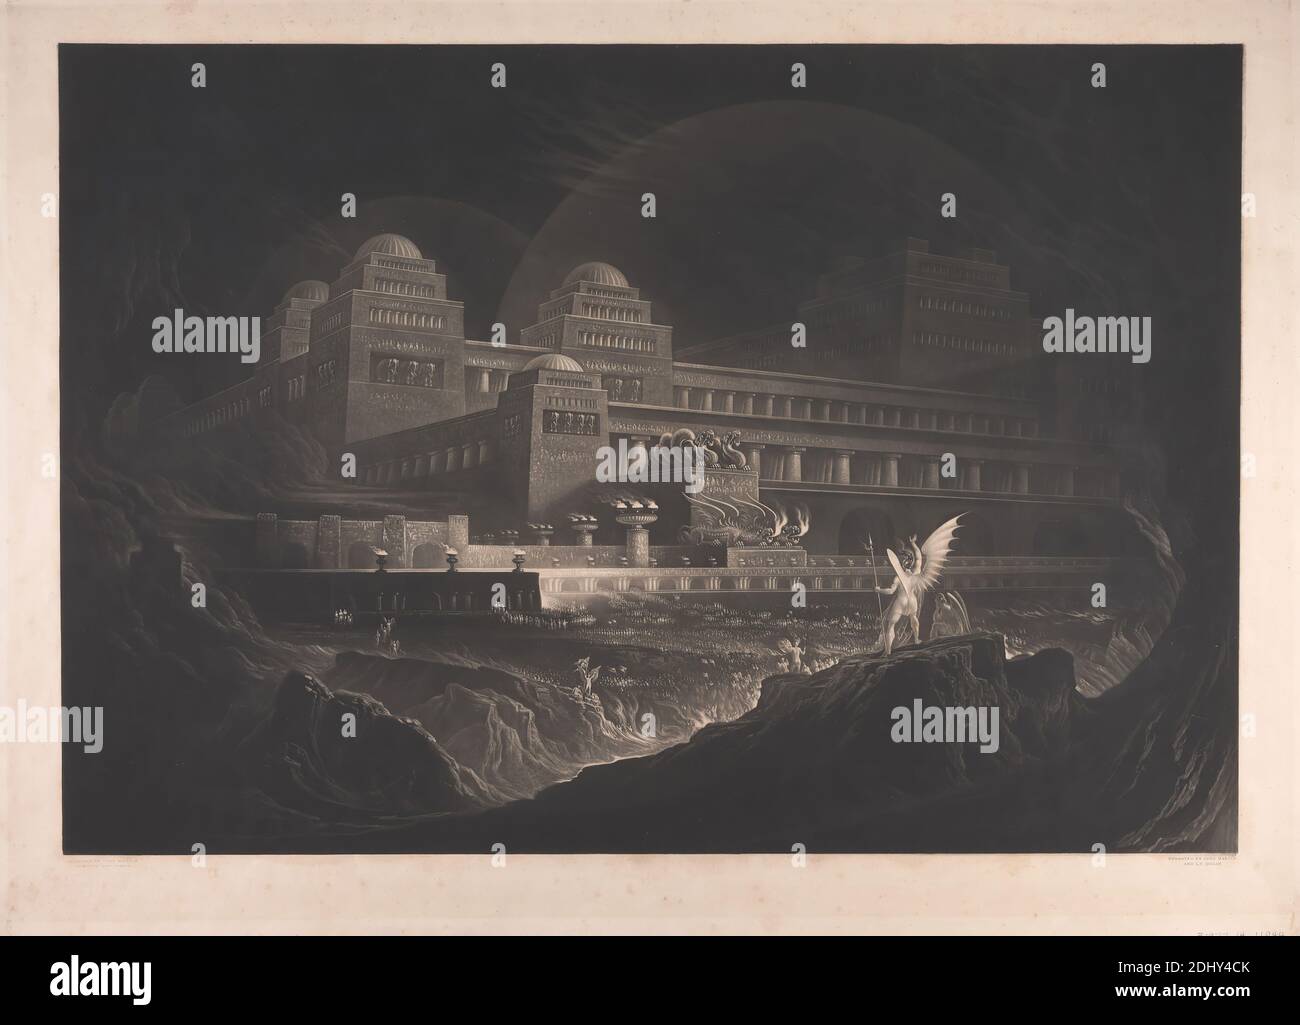 Pandemonium, impresión hecha por John Martin, 1789–1854, British, y J. P. Quilley, activo 1828, después de John Martin, 1789–1854, British, 1831, Mezzotint en papel de move de textura moderada, ligeramente grueso, crema, hoja: 22 3/8 × 30 3/4 pulgadas (56.8 × 78.1 cm) e imagen: 19 1/8 × 27 5/8 pulgadas (48.6 × 70.2 cm), ángel, edificio, caos, ciudad, acantilado, multitud, demonio, diablo, cúpula, dragón, elefante (animal), llama, infierno, tema literario, Paraíso perdido (publicado 1667) por John Milton, columna, tema religioso y mitológico, roca, escudo, lanza, estatua, antorcha, alas Foto de stock